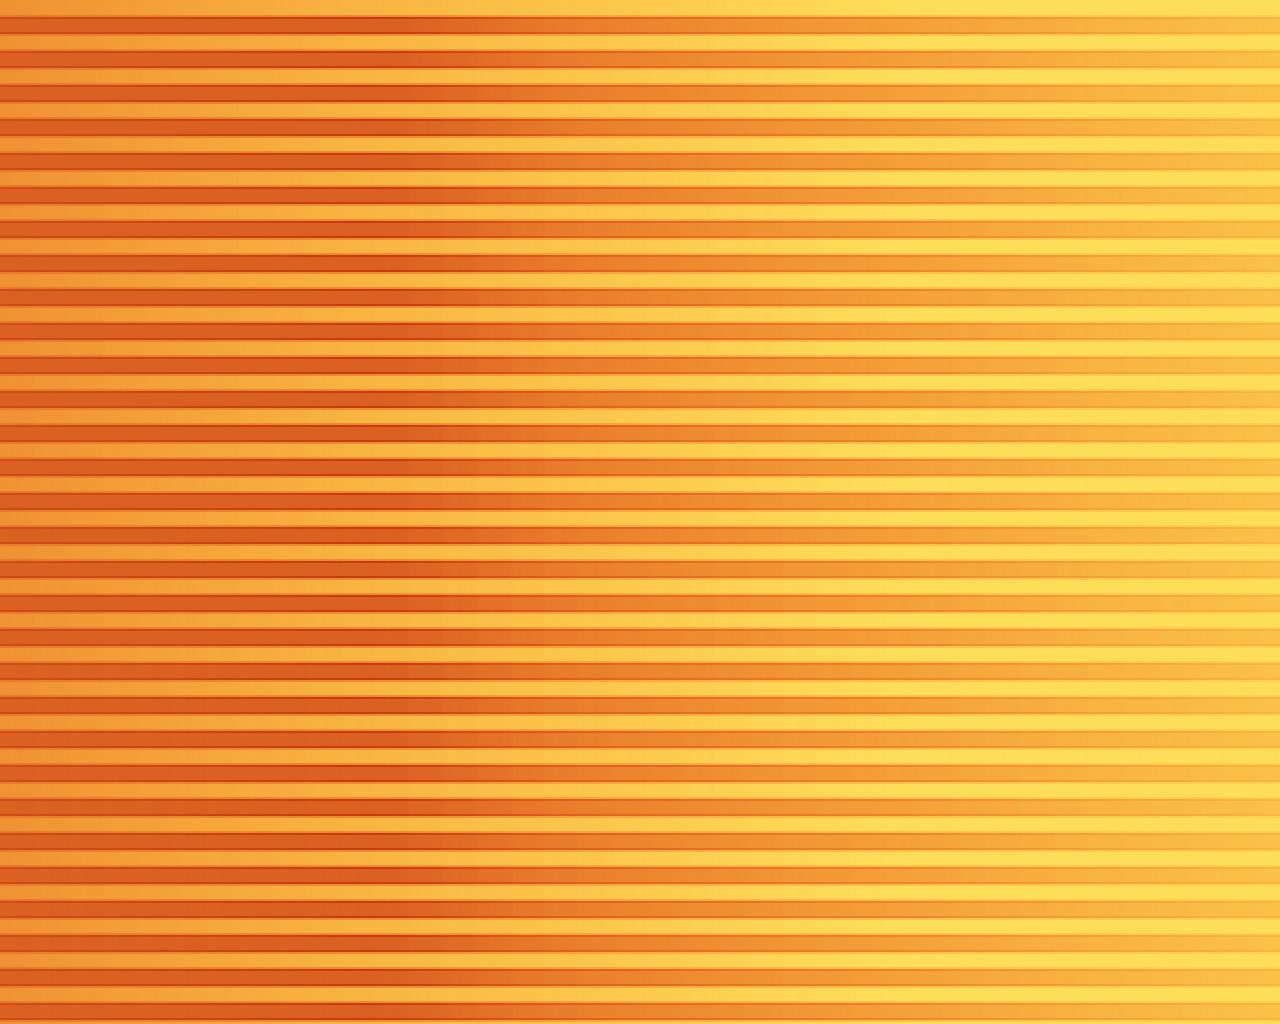 46+] Orange and Yellow Wallpaper - WallpaperSafari